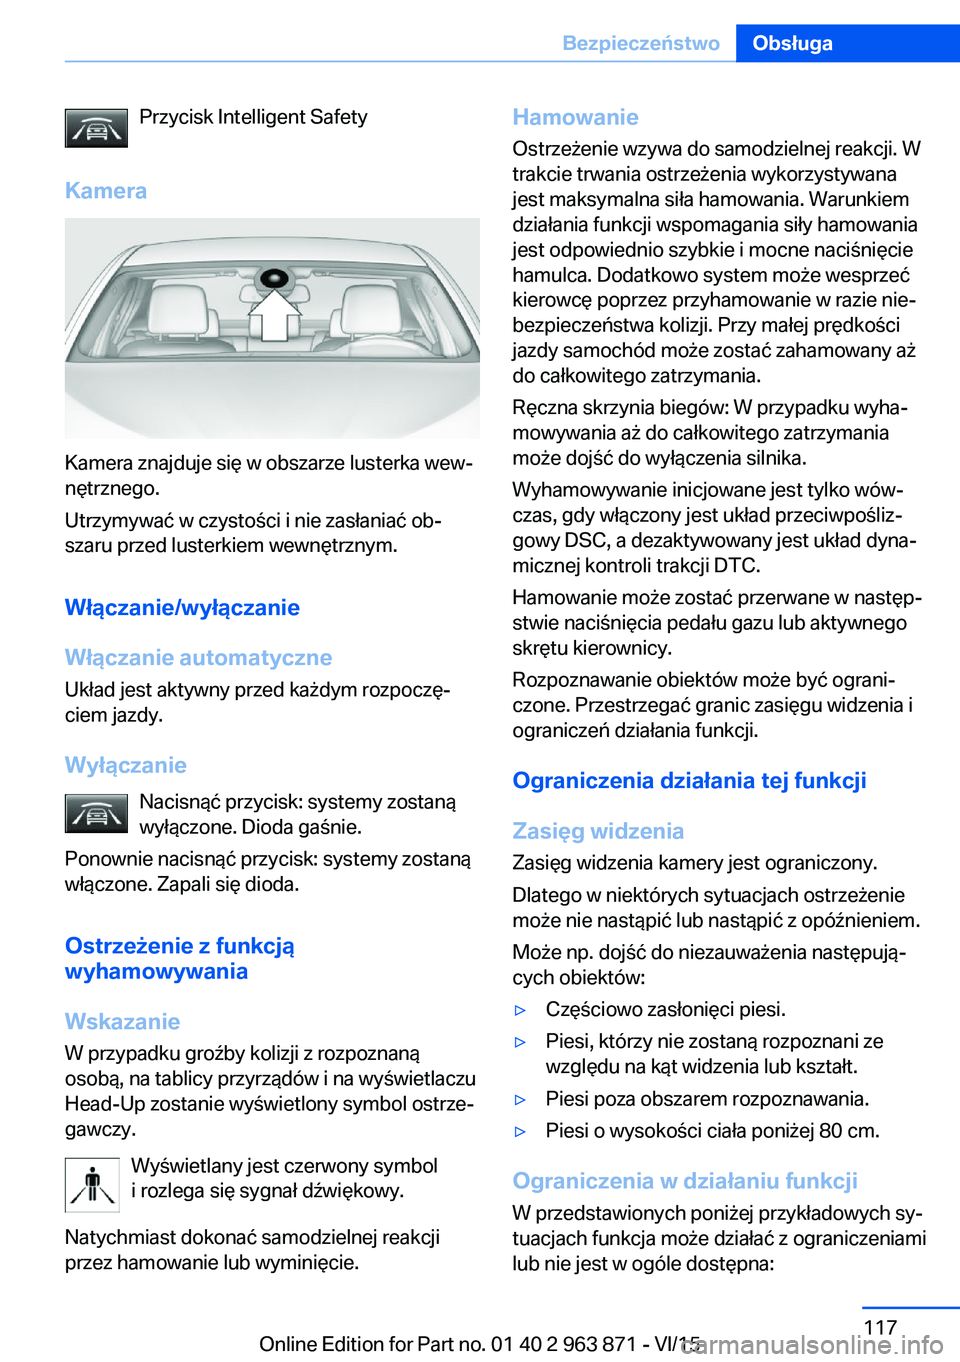 BMW 2 SERIES COUPE 2016  Instrukcja obsługi (in Polish) Przycisk Intelligent Safety
Kamera
Kamera znajduje się w obszarze lusterka wew‐
nętrznego.
Utrzymywać w czystości i nie zasłaniać ob‐
szaru przed lusterkiem wewnętrznym.
Włączanie/wyłąc